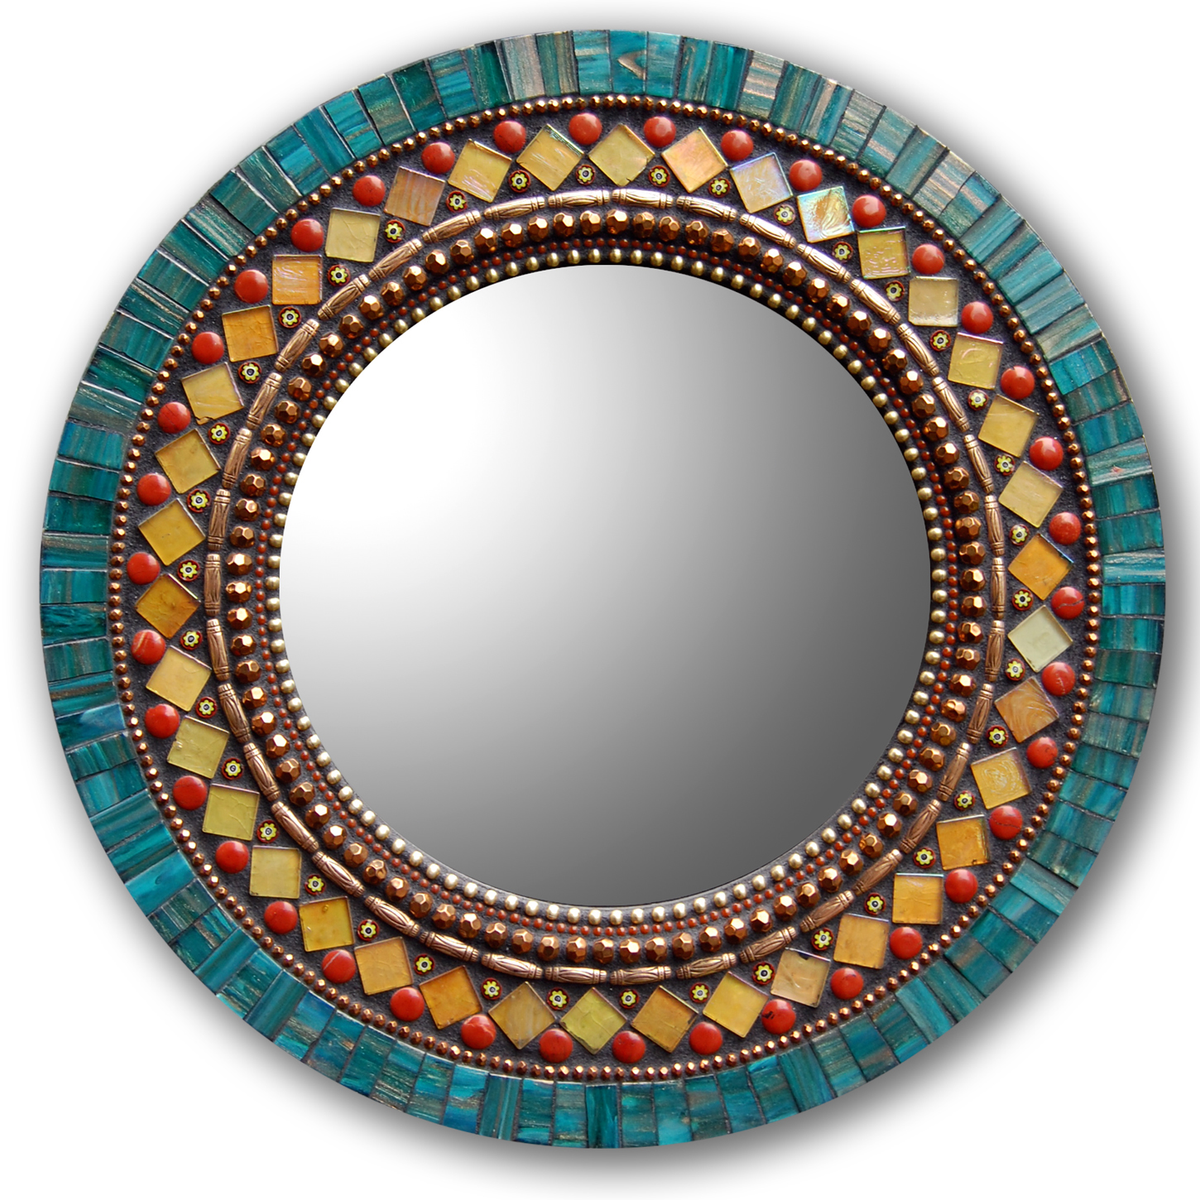 Mosaic Round Mirror in Butterfly by Angie Heinrich, Zetamari Mosaic Artworks